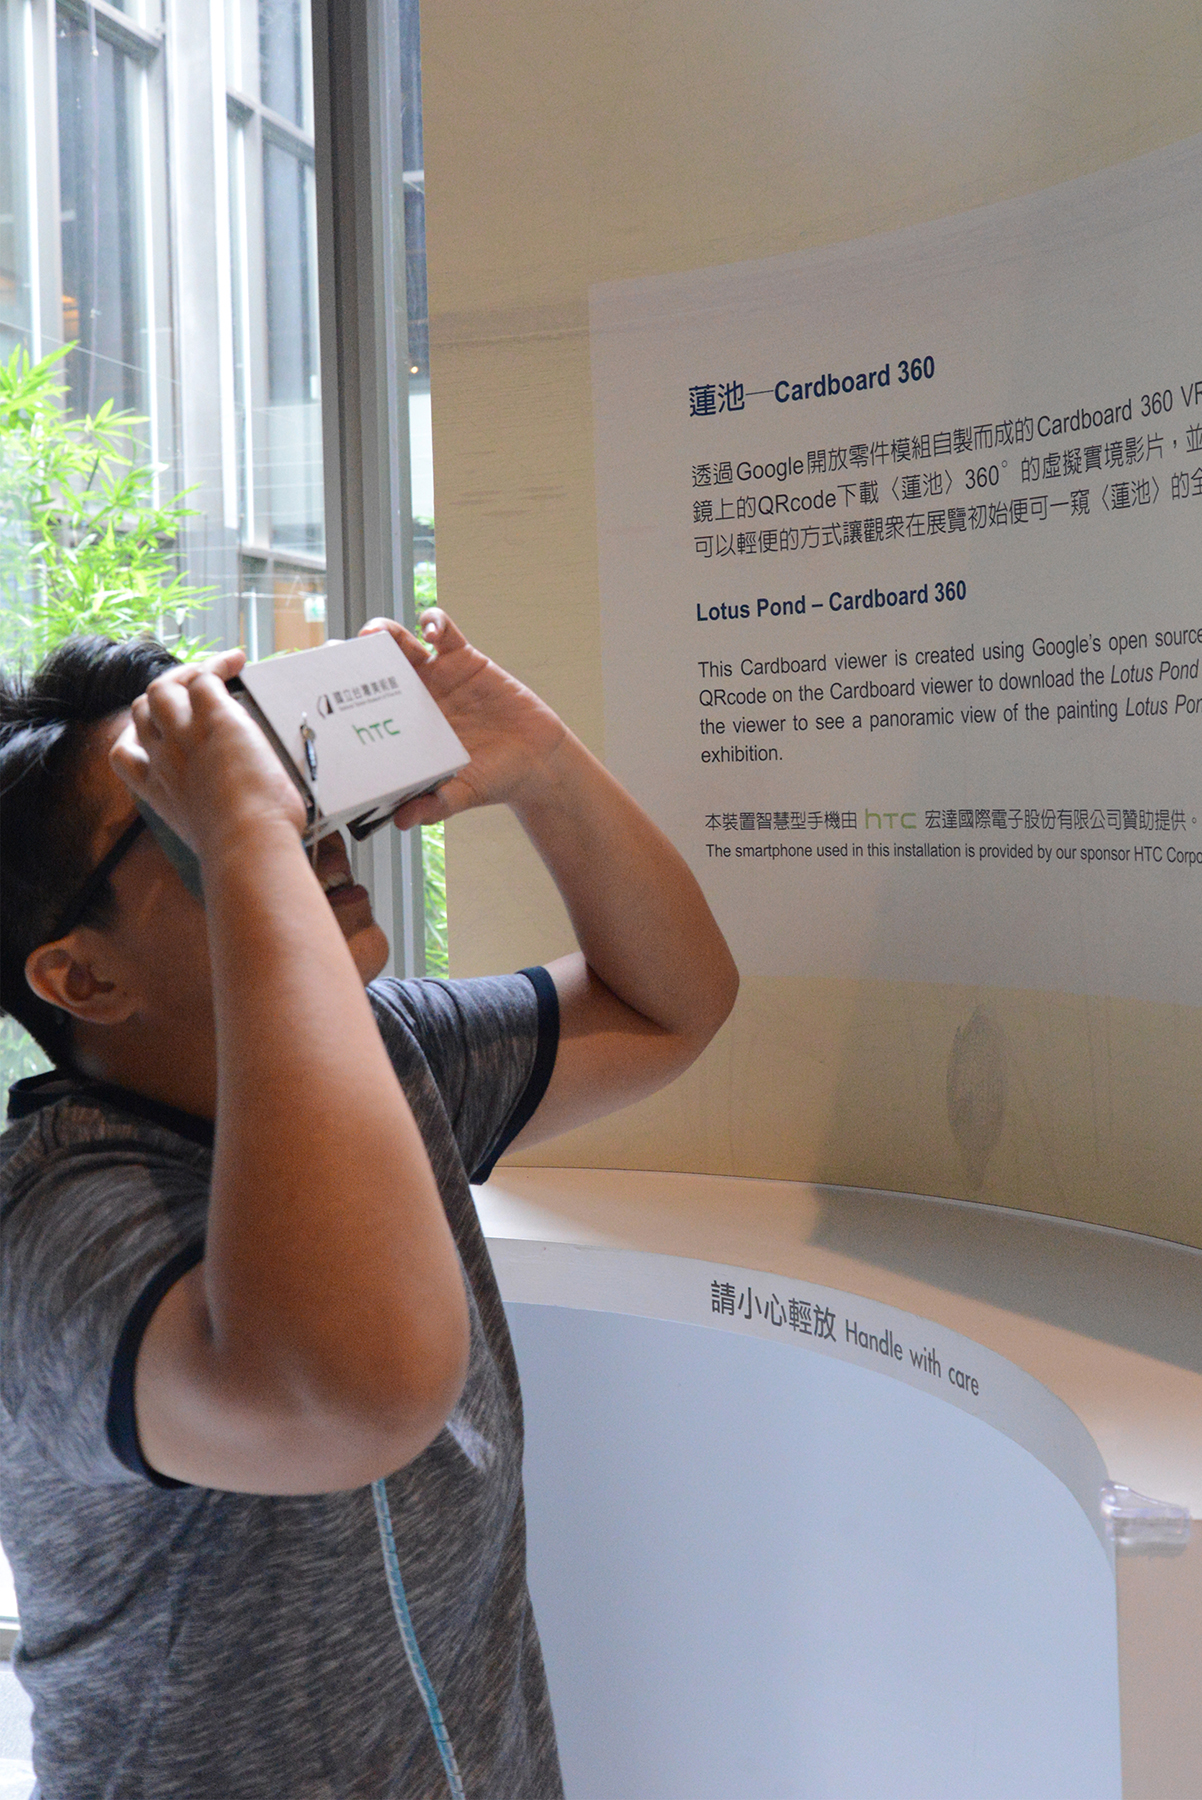 文章:105年新媒體科技應用展示之多感官虛擬實境體驗建置案 - 多感藝境展的(8)張圖片